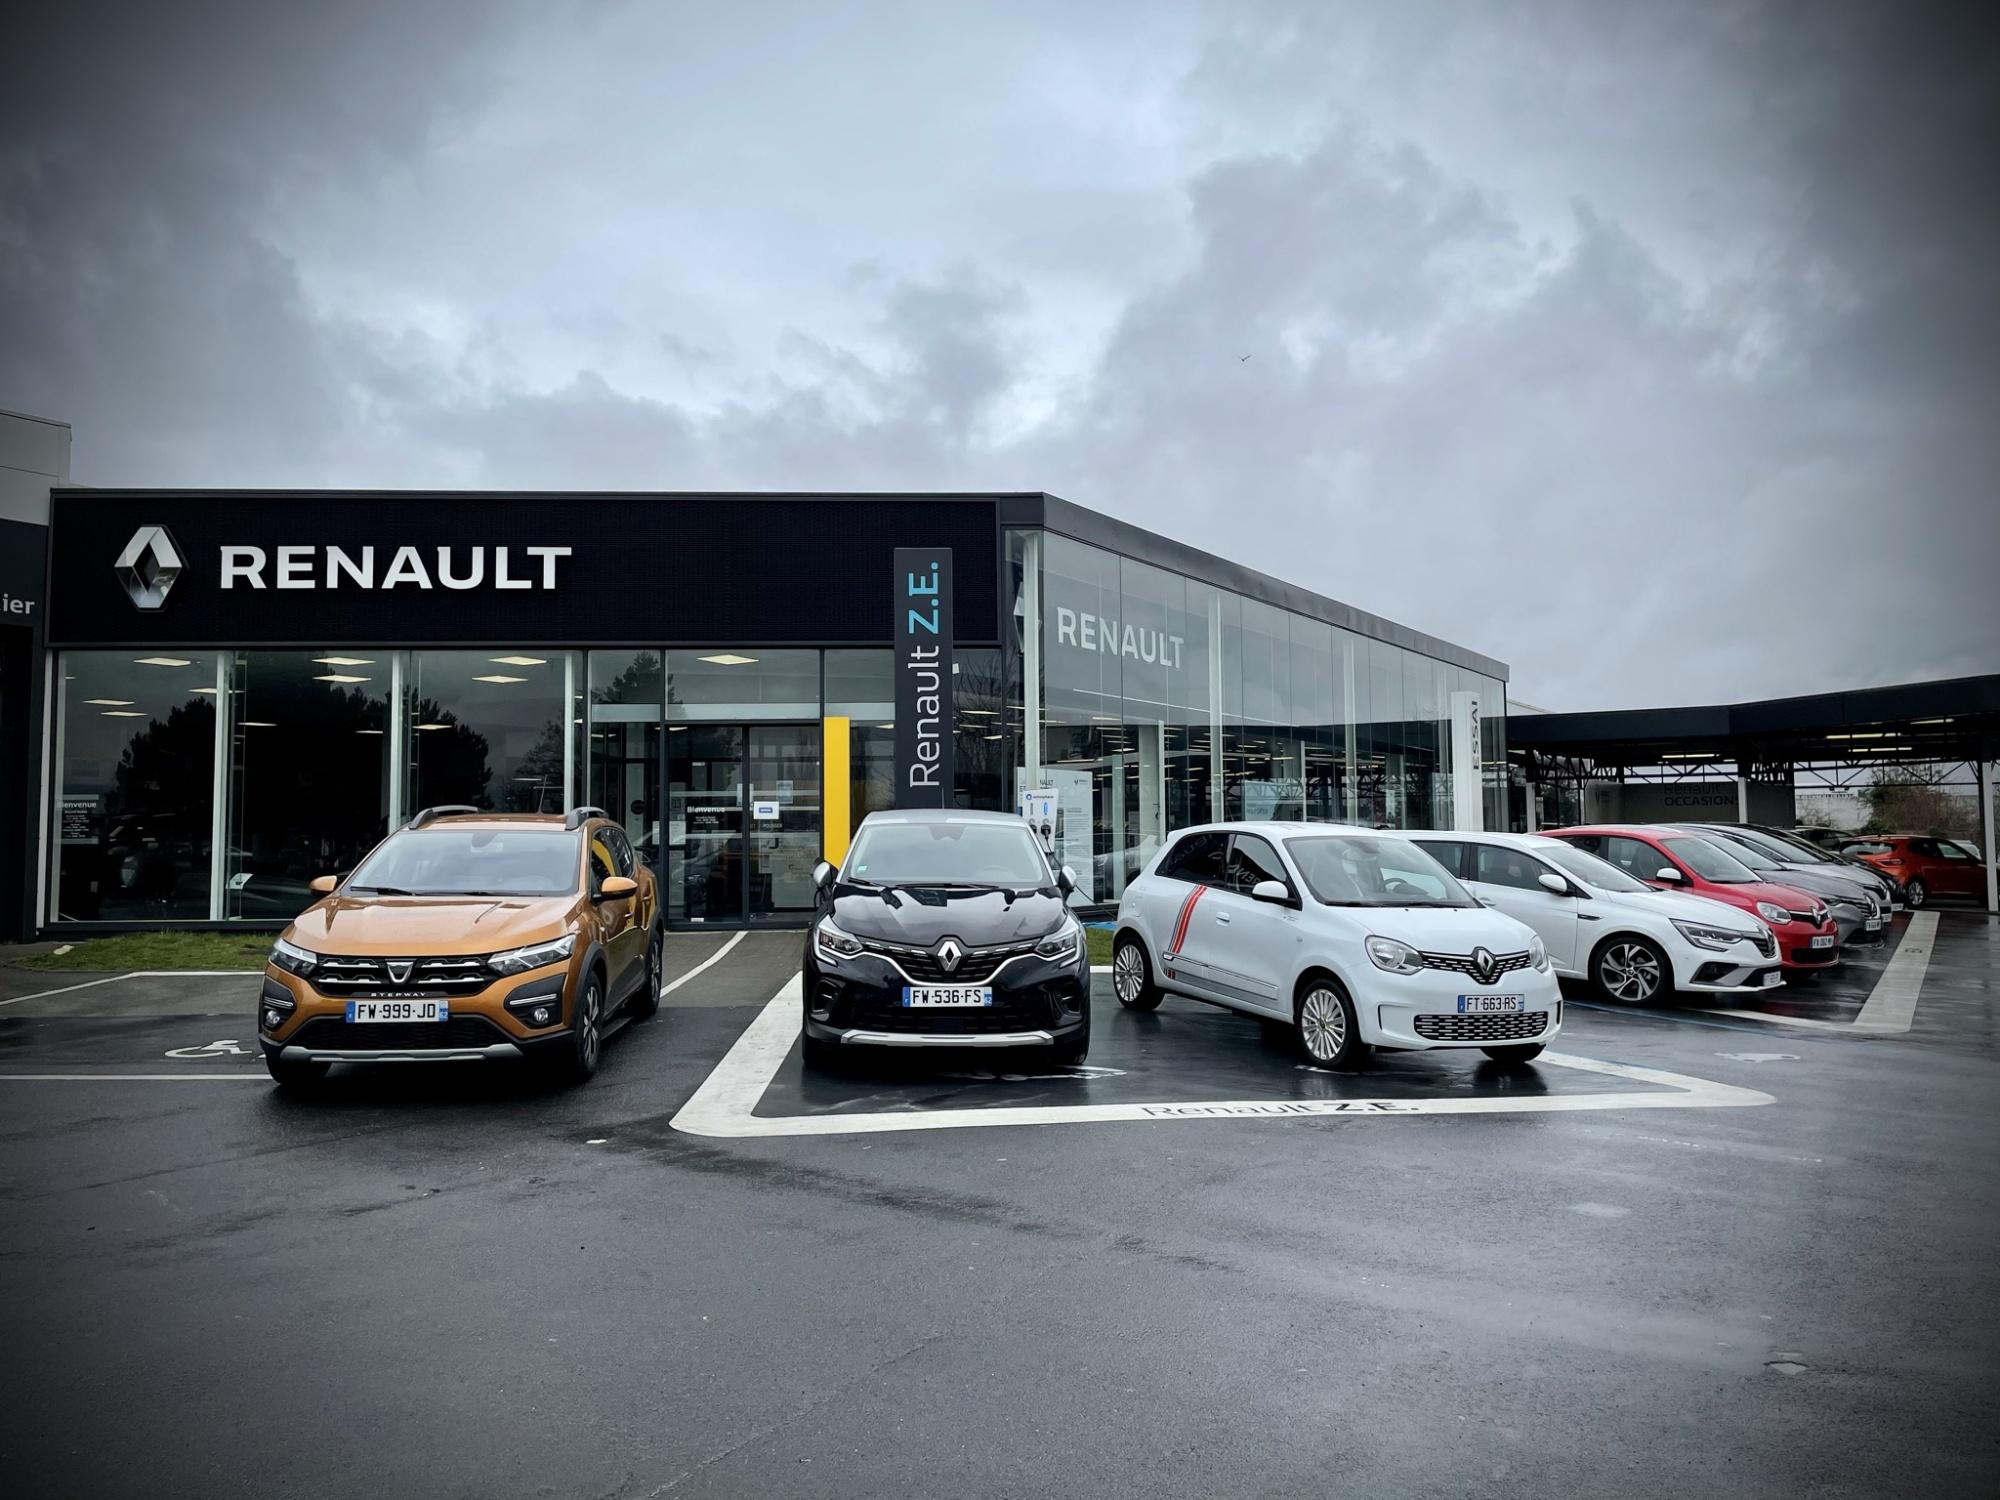 Renault Liévin